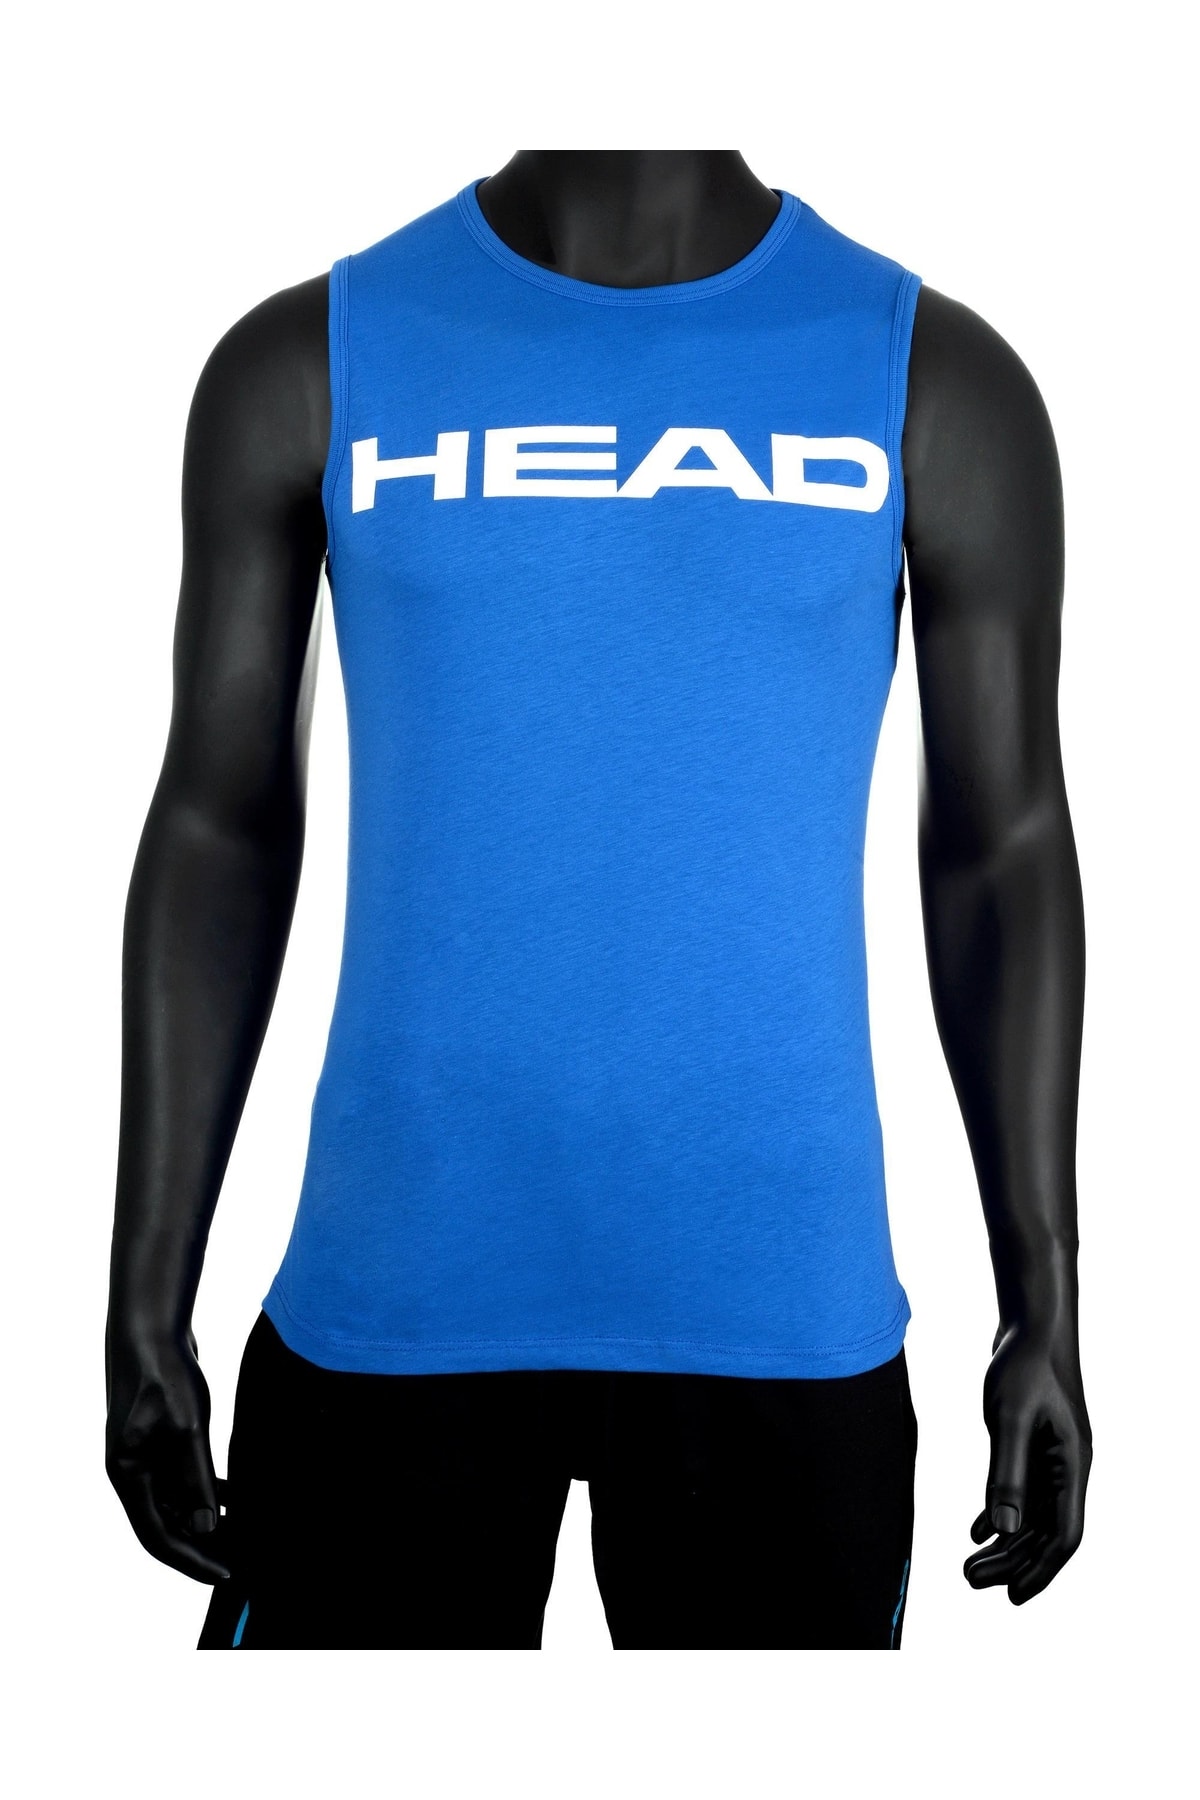 Head Erkek Mavi Pamuklu Sıfır Kol Fitness T-shirt Sporcu Atleti Kolsuz Tanktop Tenis Tişörtü